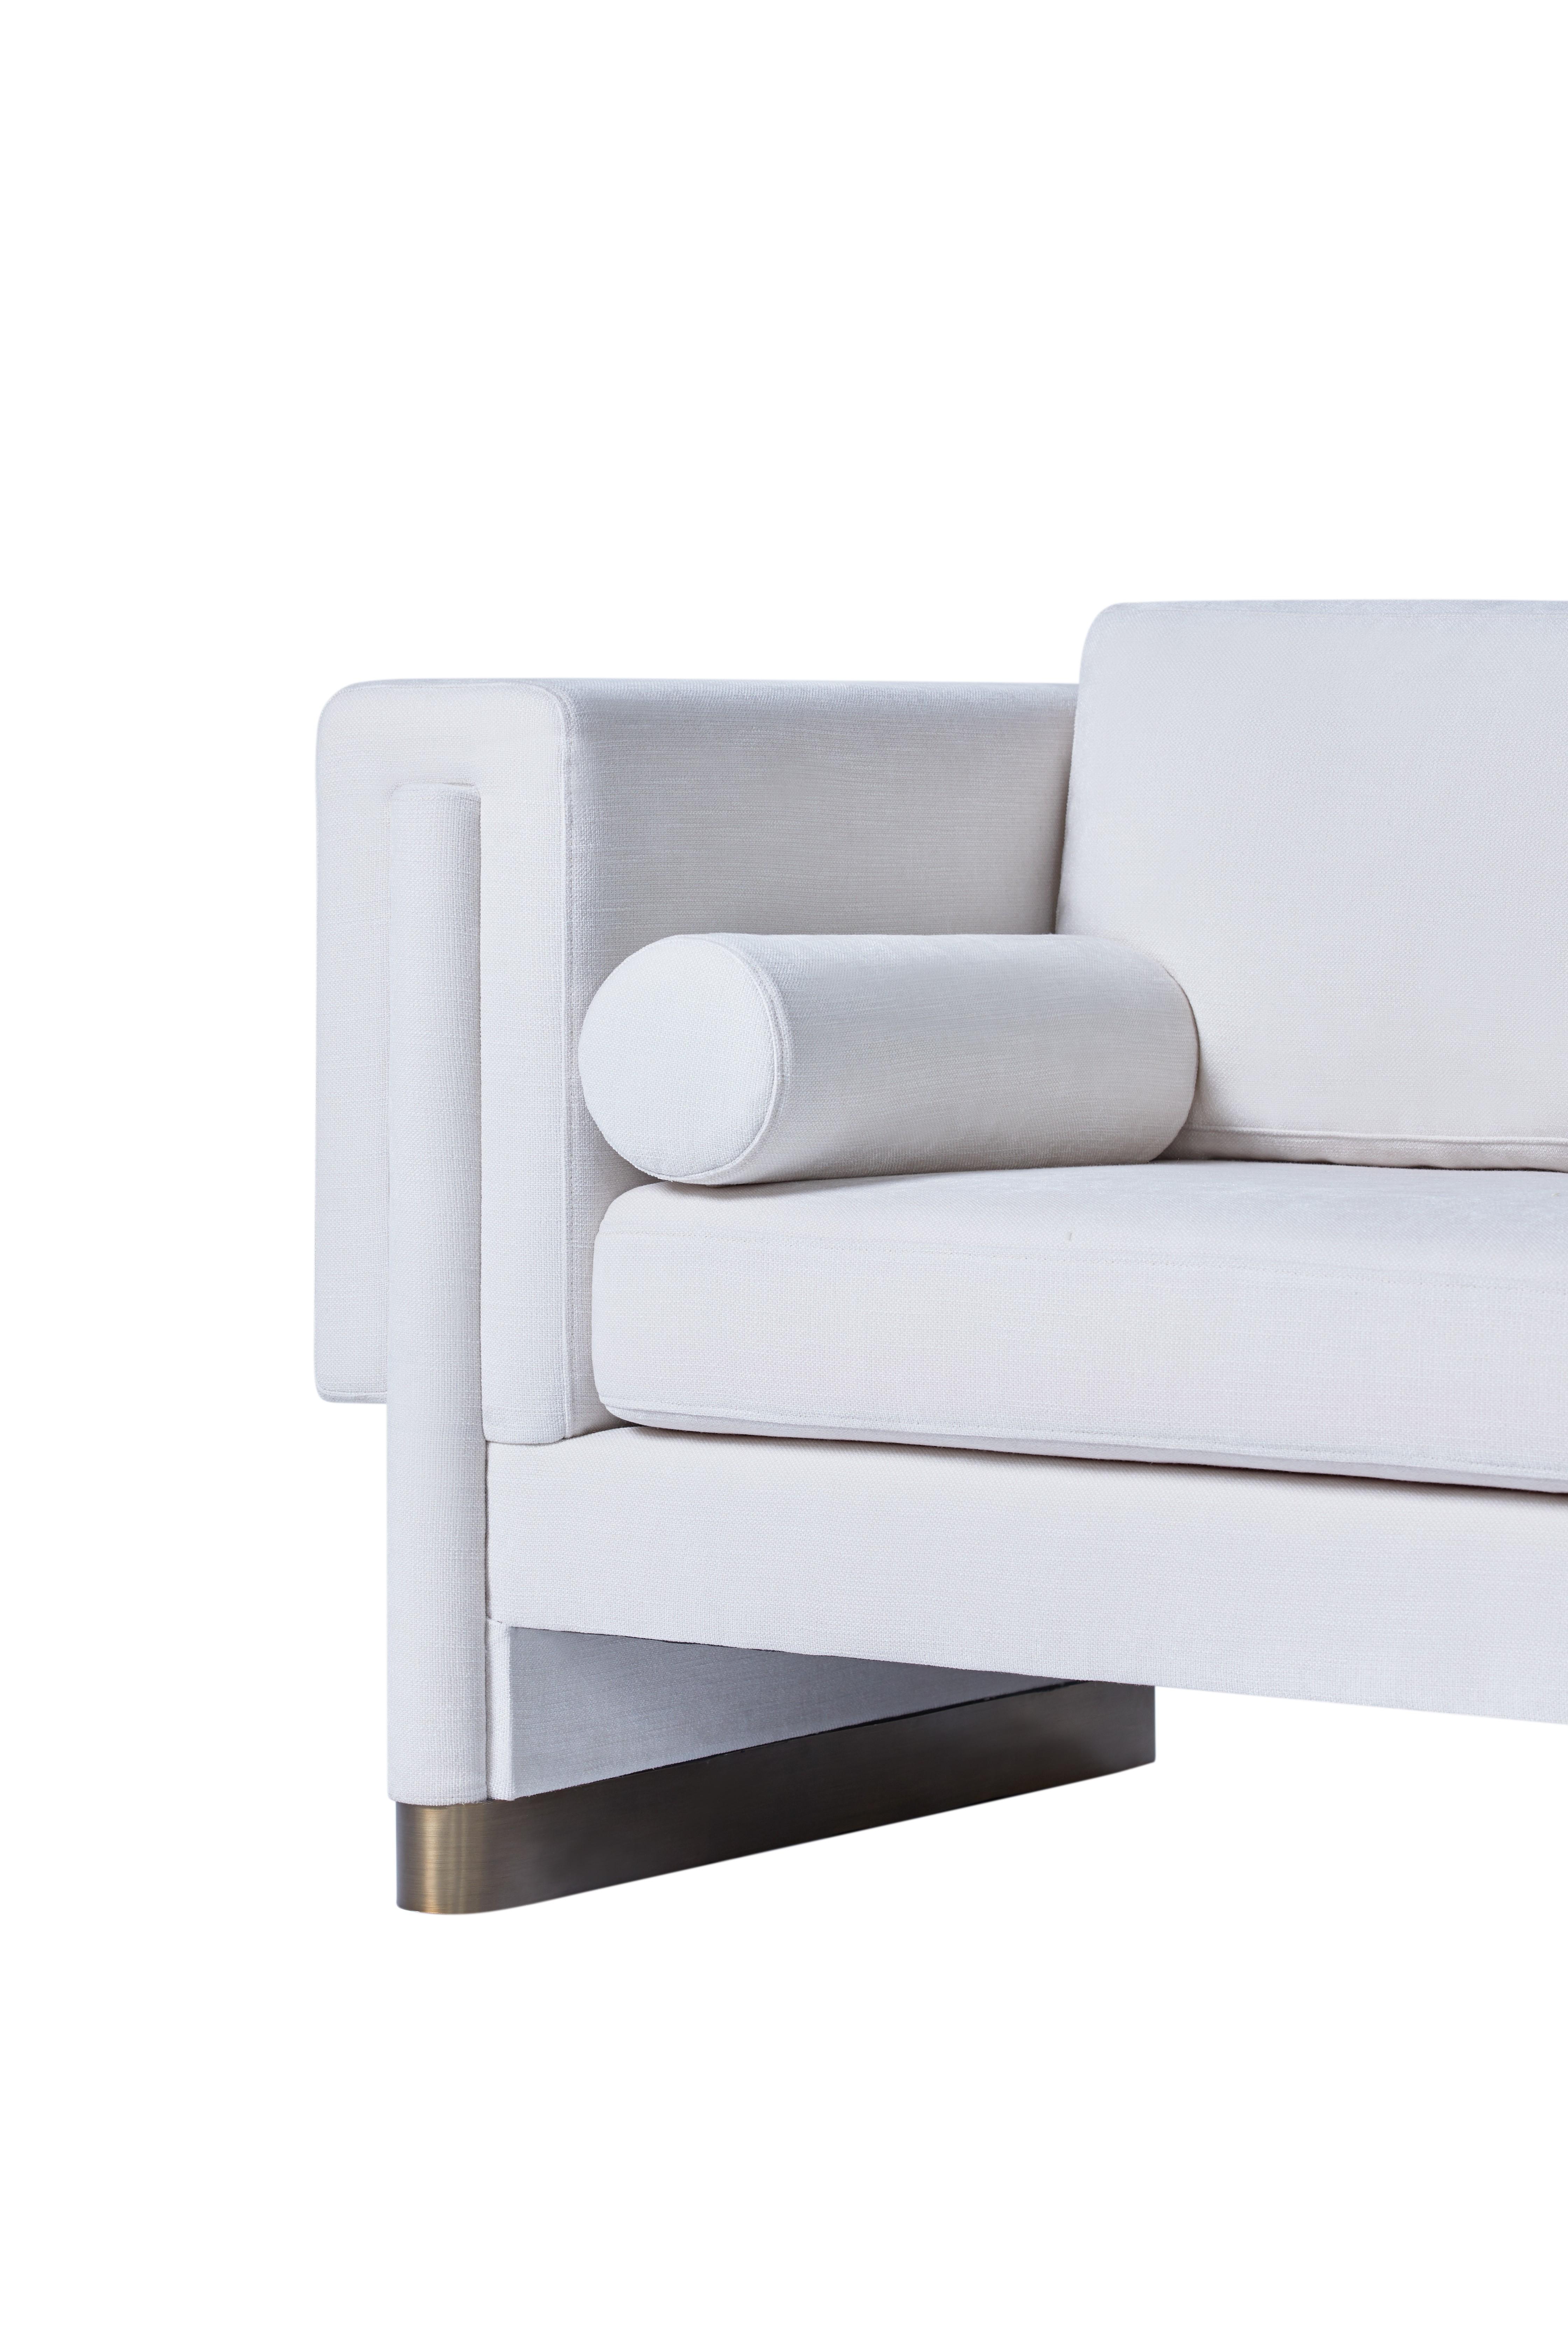 RJS-9701 Contemporary 3 Seater Fabric White Velvet Sofa